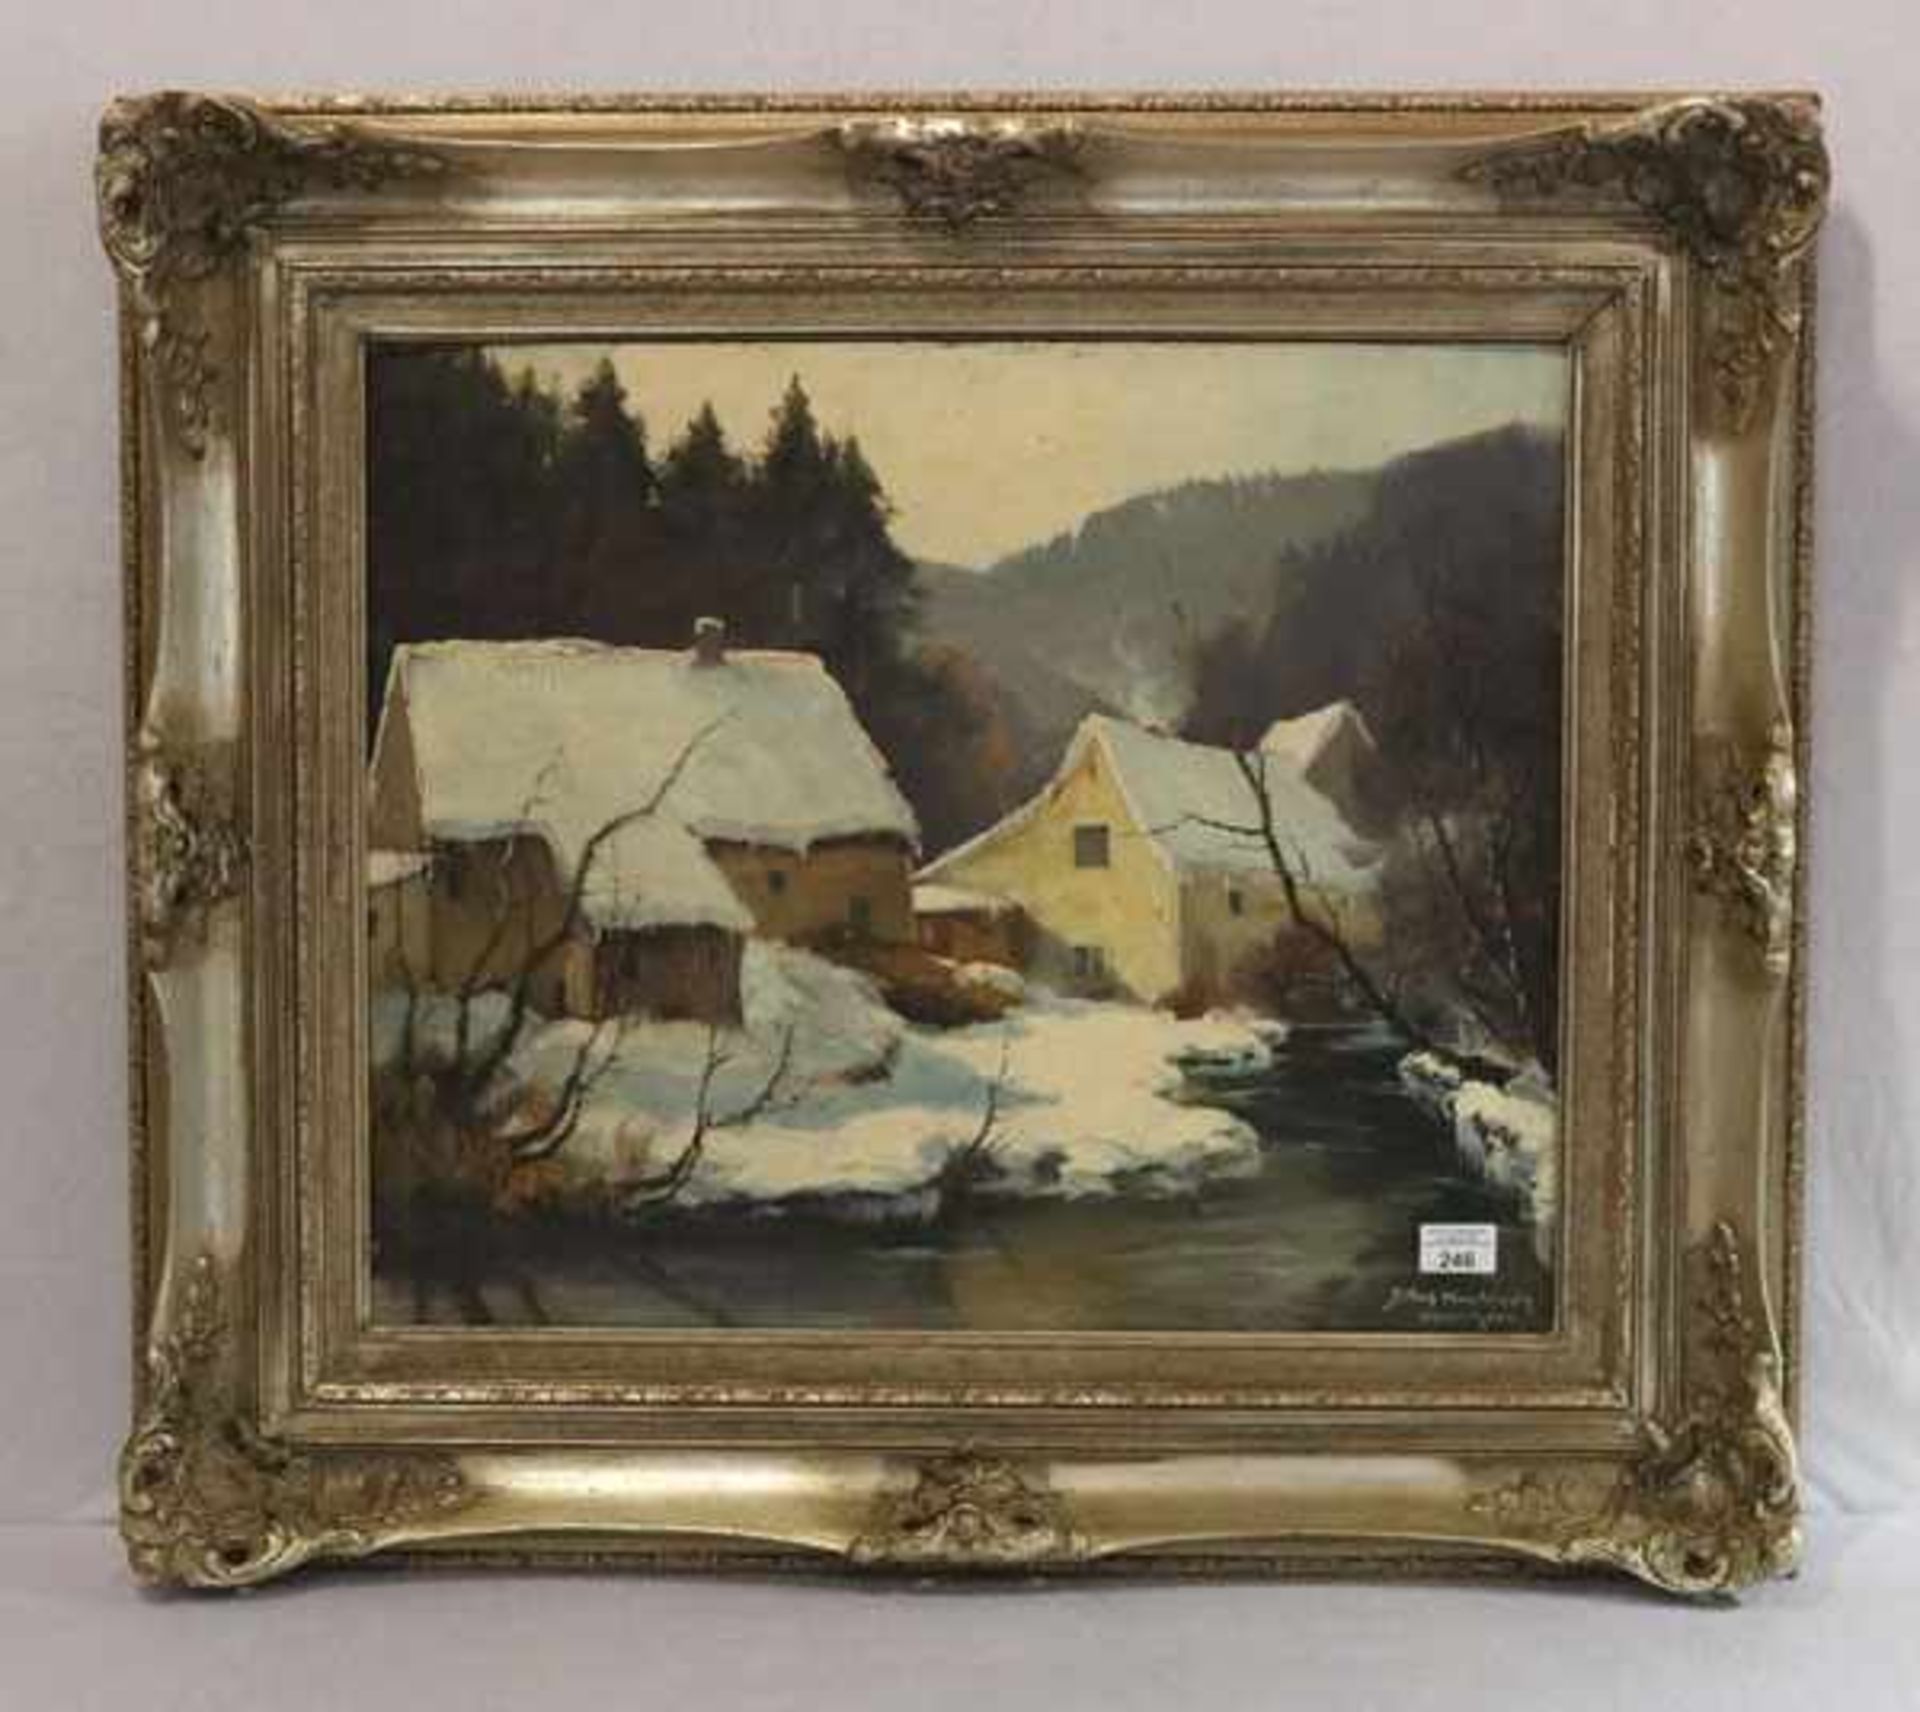 Gemälde ÖL/Malkarton 'Winterlandschaft mit Häuser', signiert Rolf Knobloch, München, * 1891